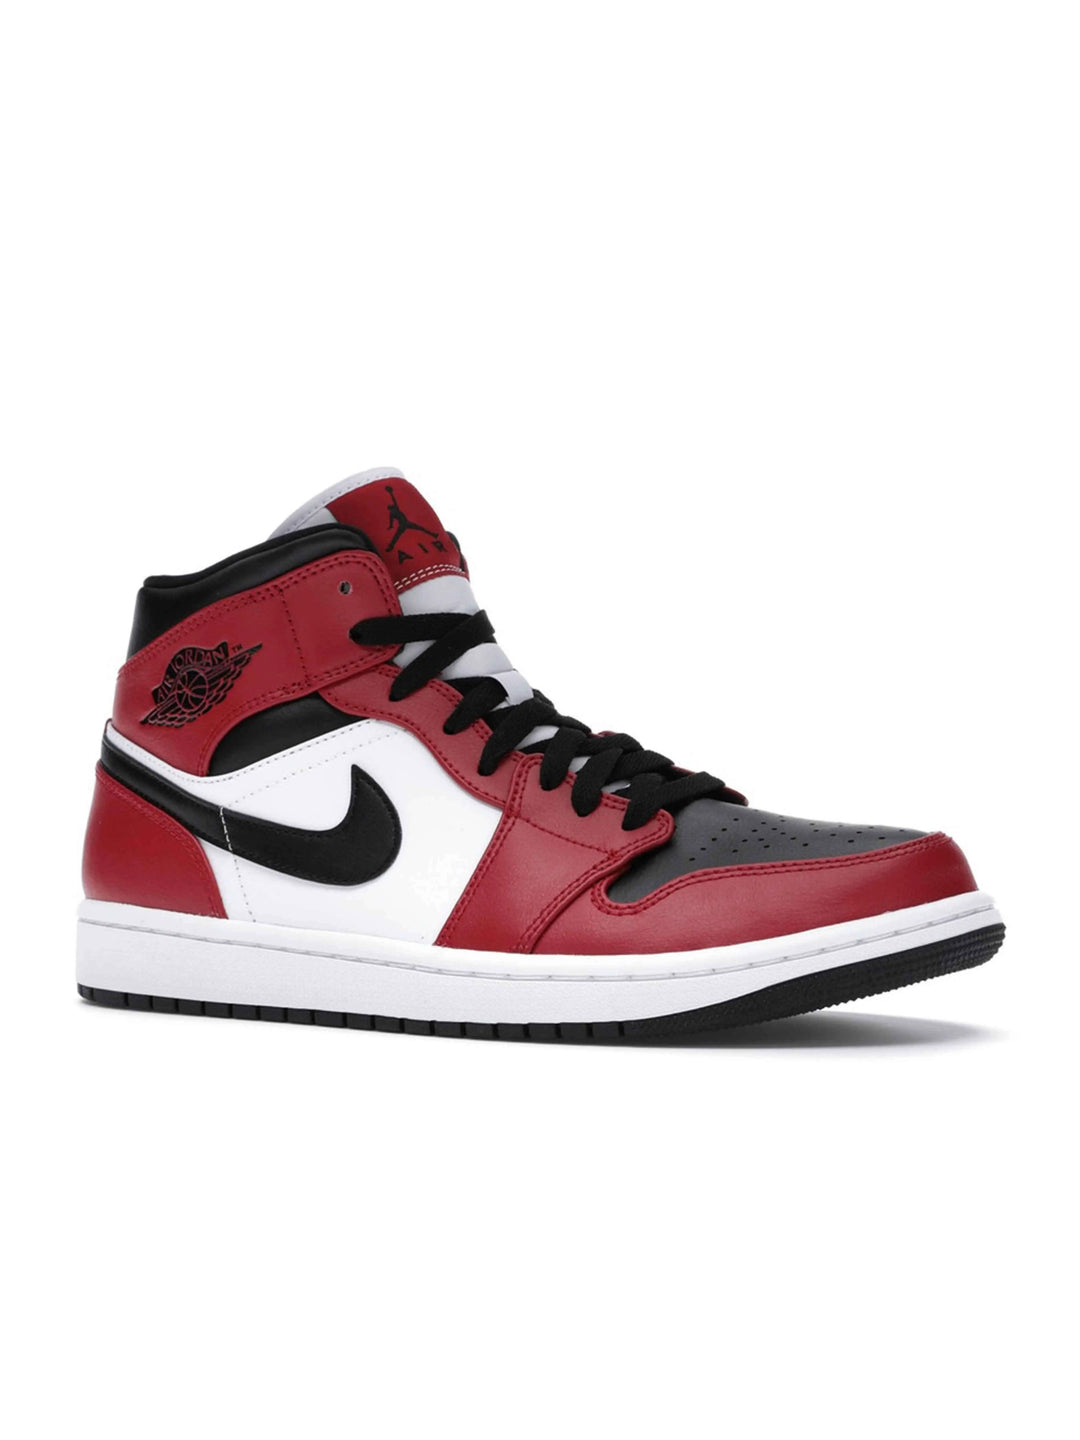 Nike Air Jordan 1 Mid Chicago Black Toe Jordan Brand